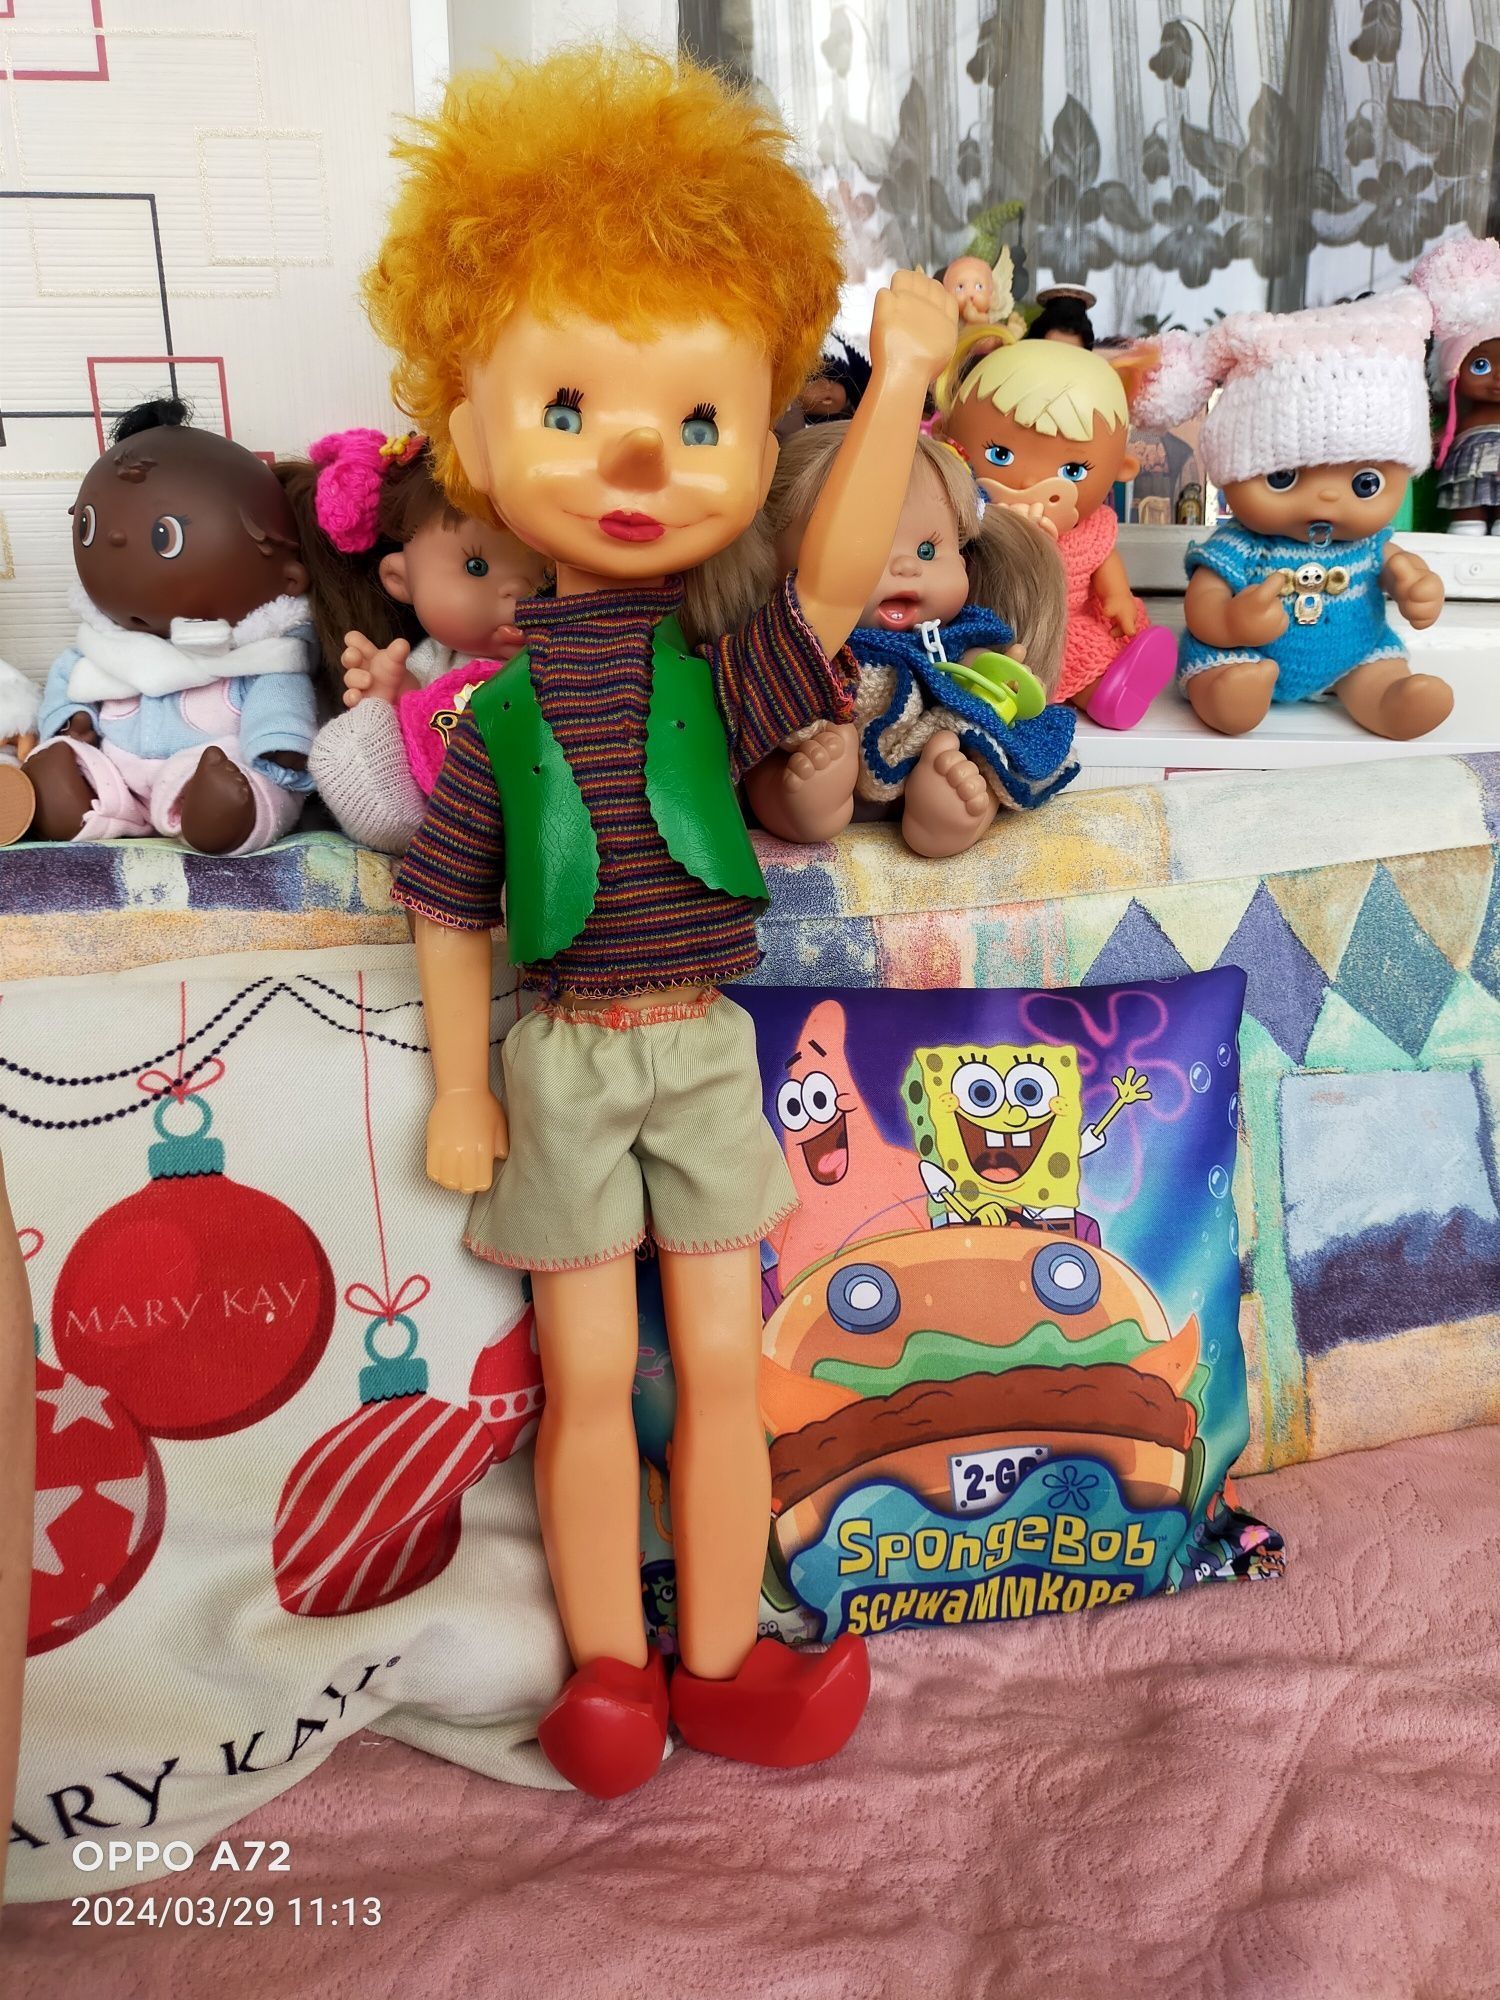 Продам кукол и игрушки фирменные и качественные.Листайте фото